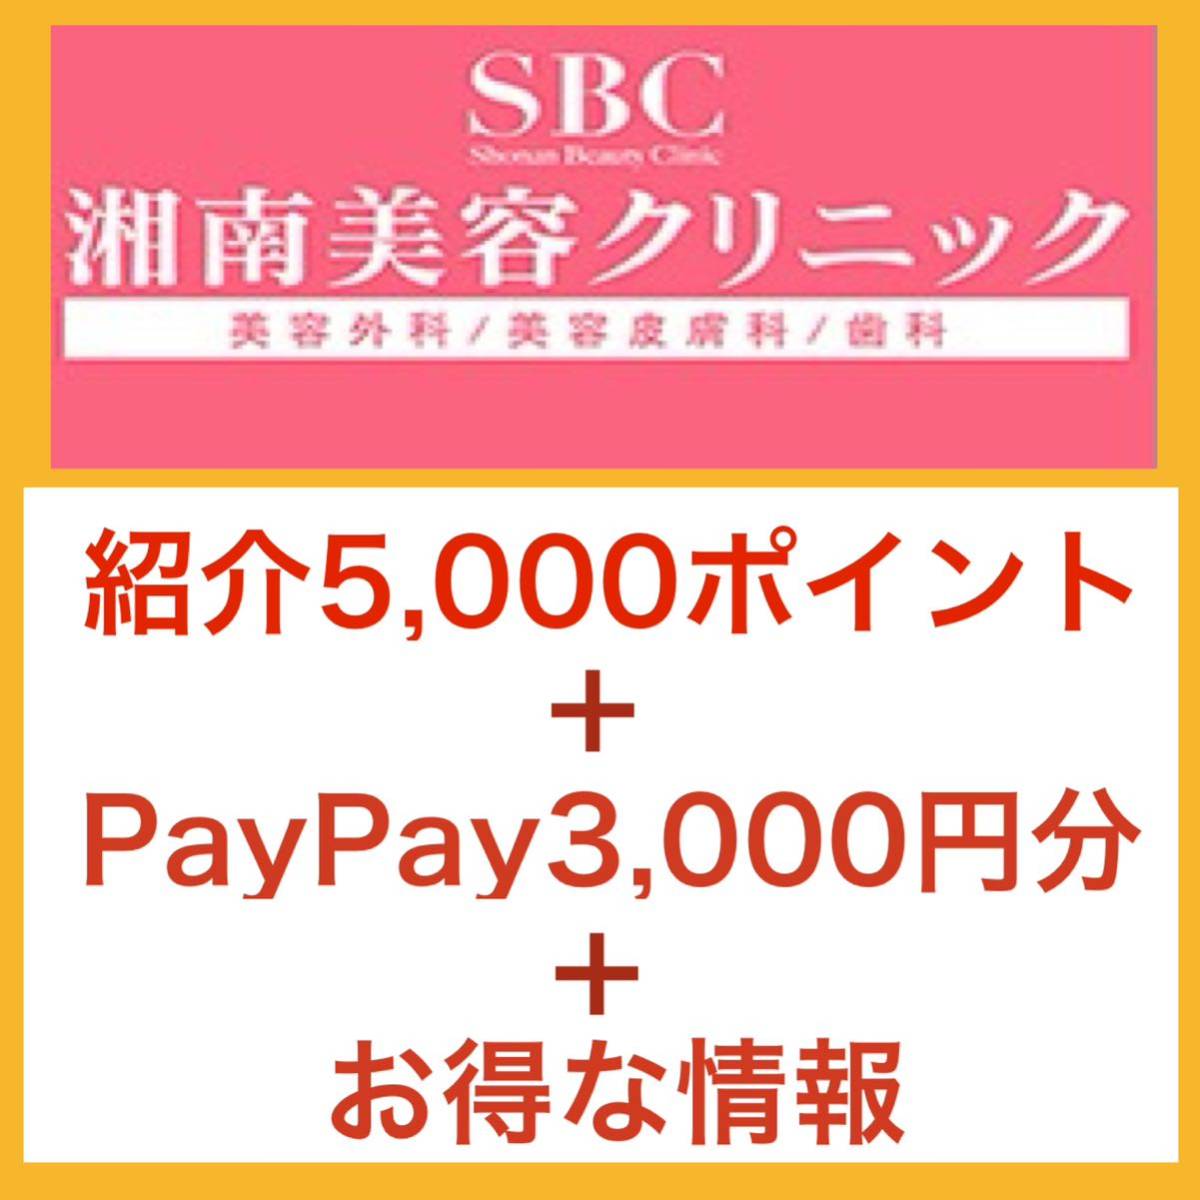  Рекомендация 5000 point ＋PayPay3000  йен ...　 побережье Сёнан   красота  ...　 побережье Сёнан   красота  ...　SBC    ... Рекомендация  купон  　 скидка  